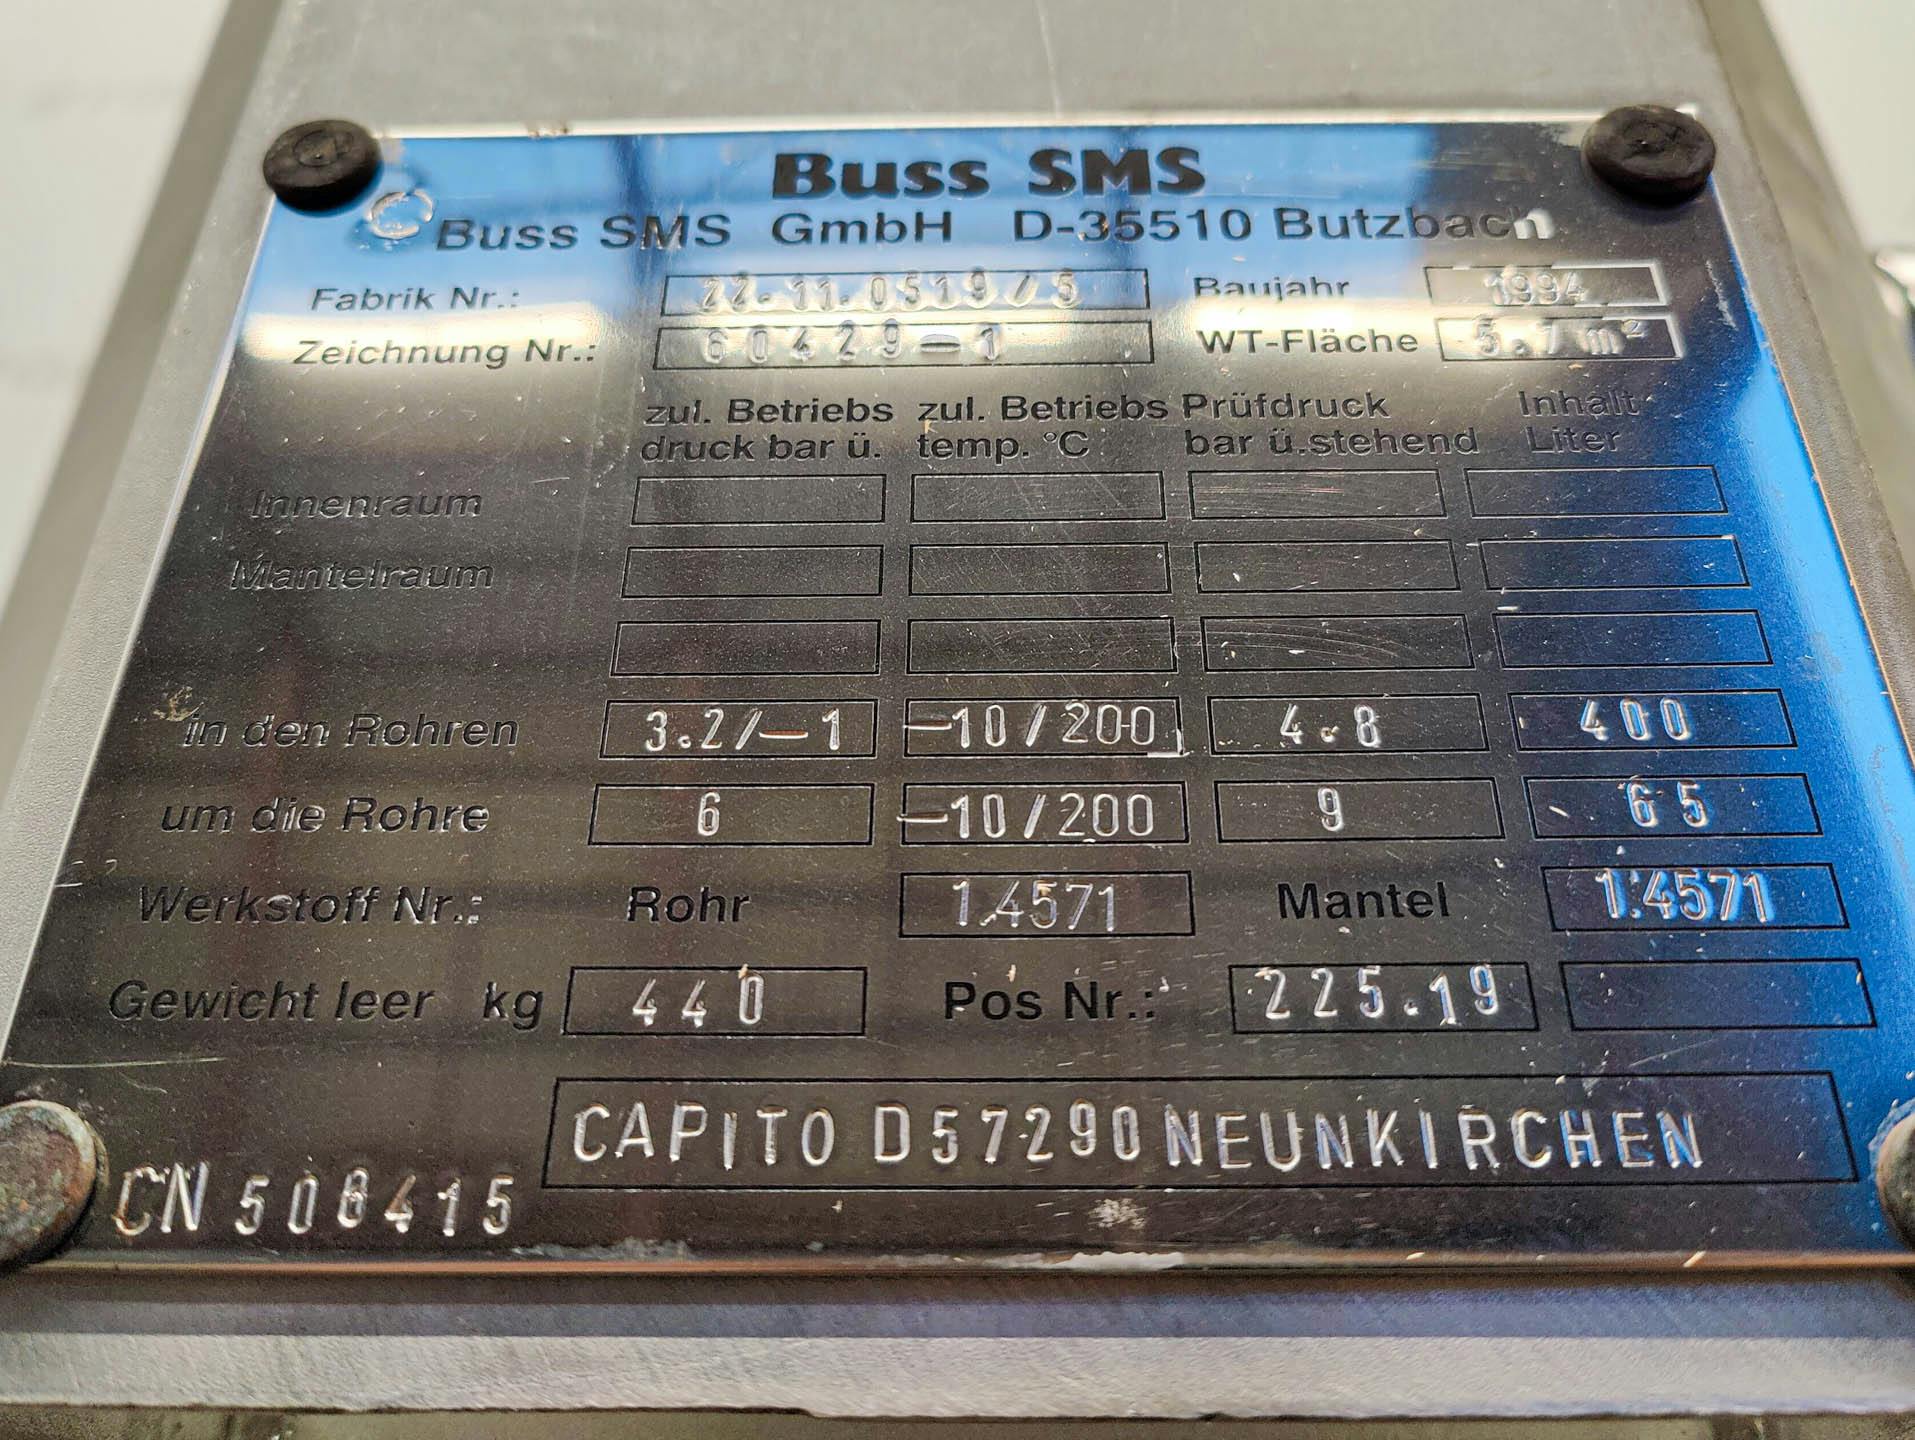 Buss-SMS trickling film cooler 5,7 m2 - Evaporatore a film cadente - image 10